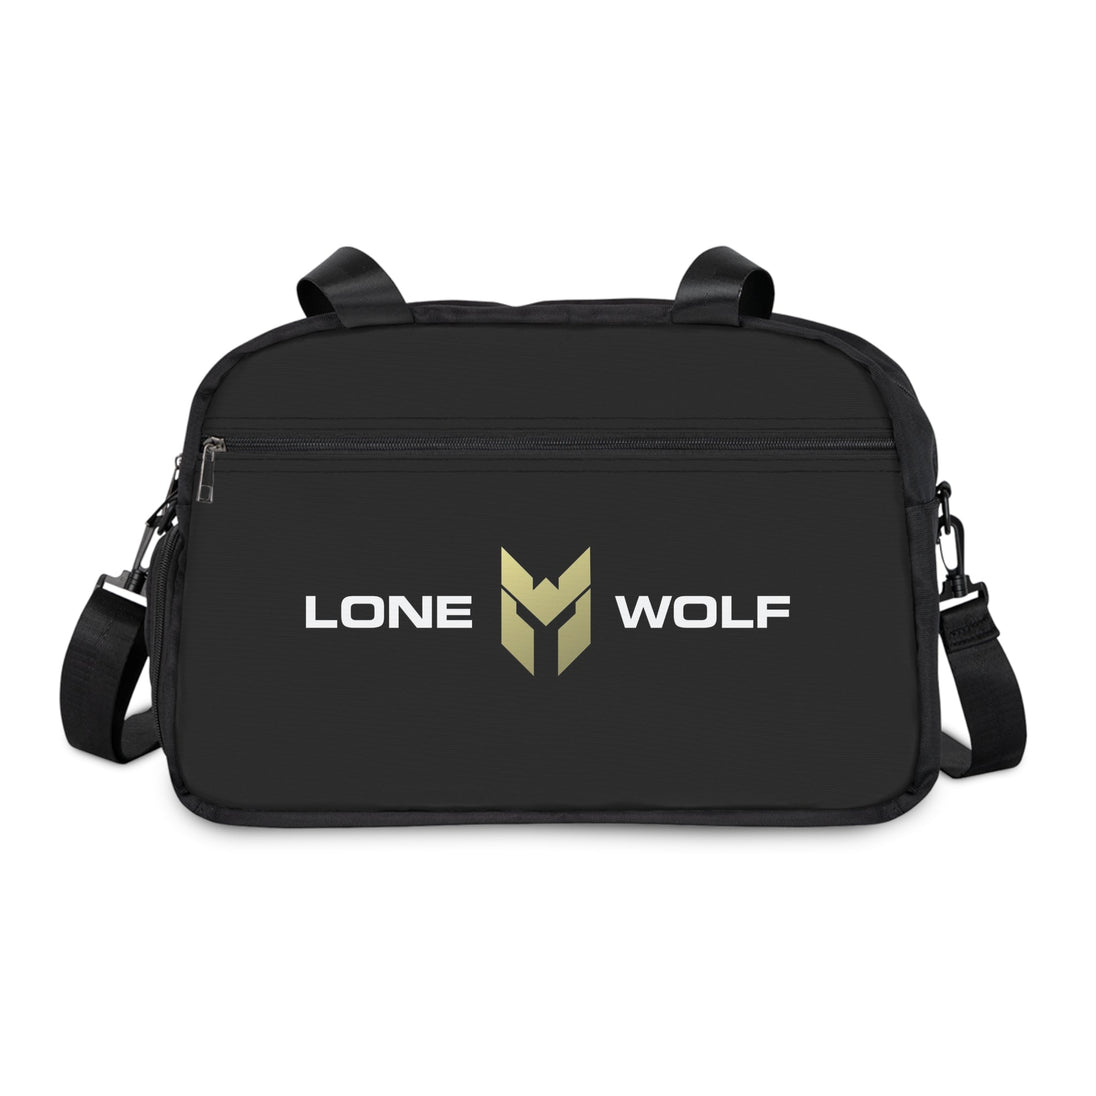 Lonewolf Fitness Gym Bag - THE LONEWOLF BRAND PTY LTD